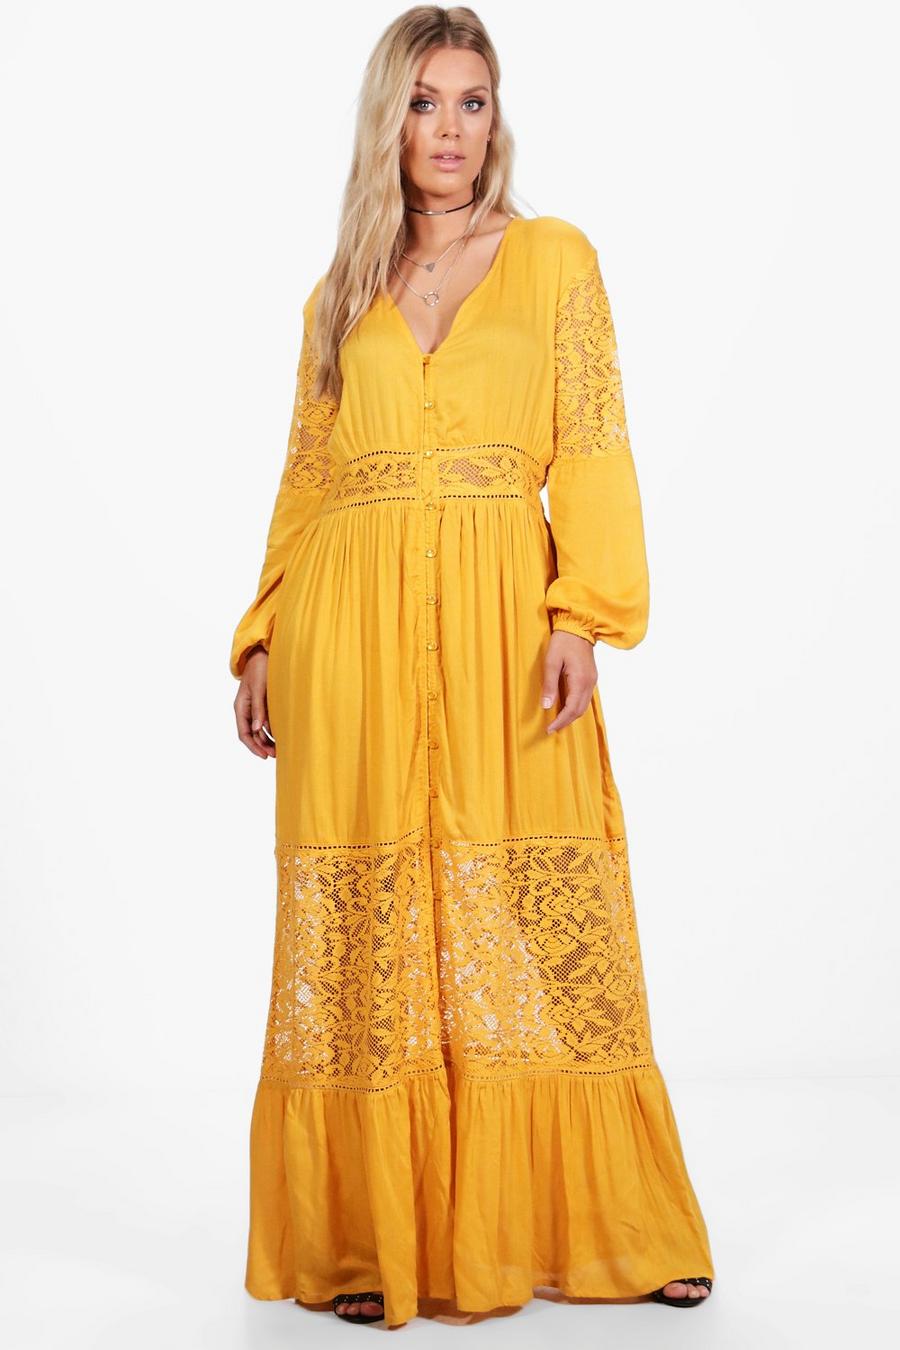 אוֹכְרָה giallo שמלת מקסי בוהו בתוספת תחרה למידות גדולות